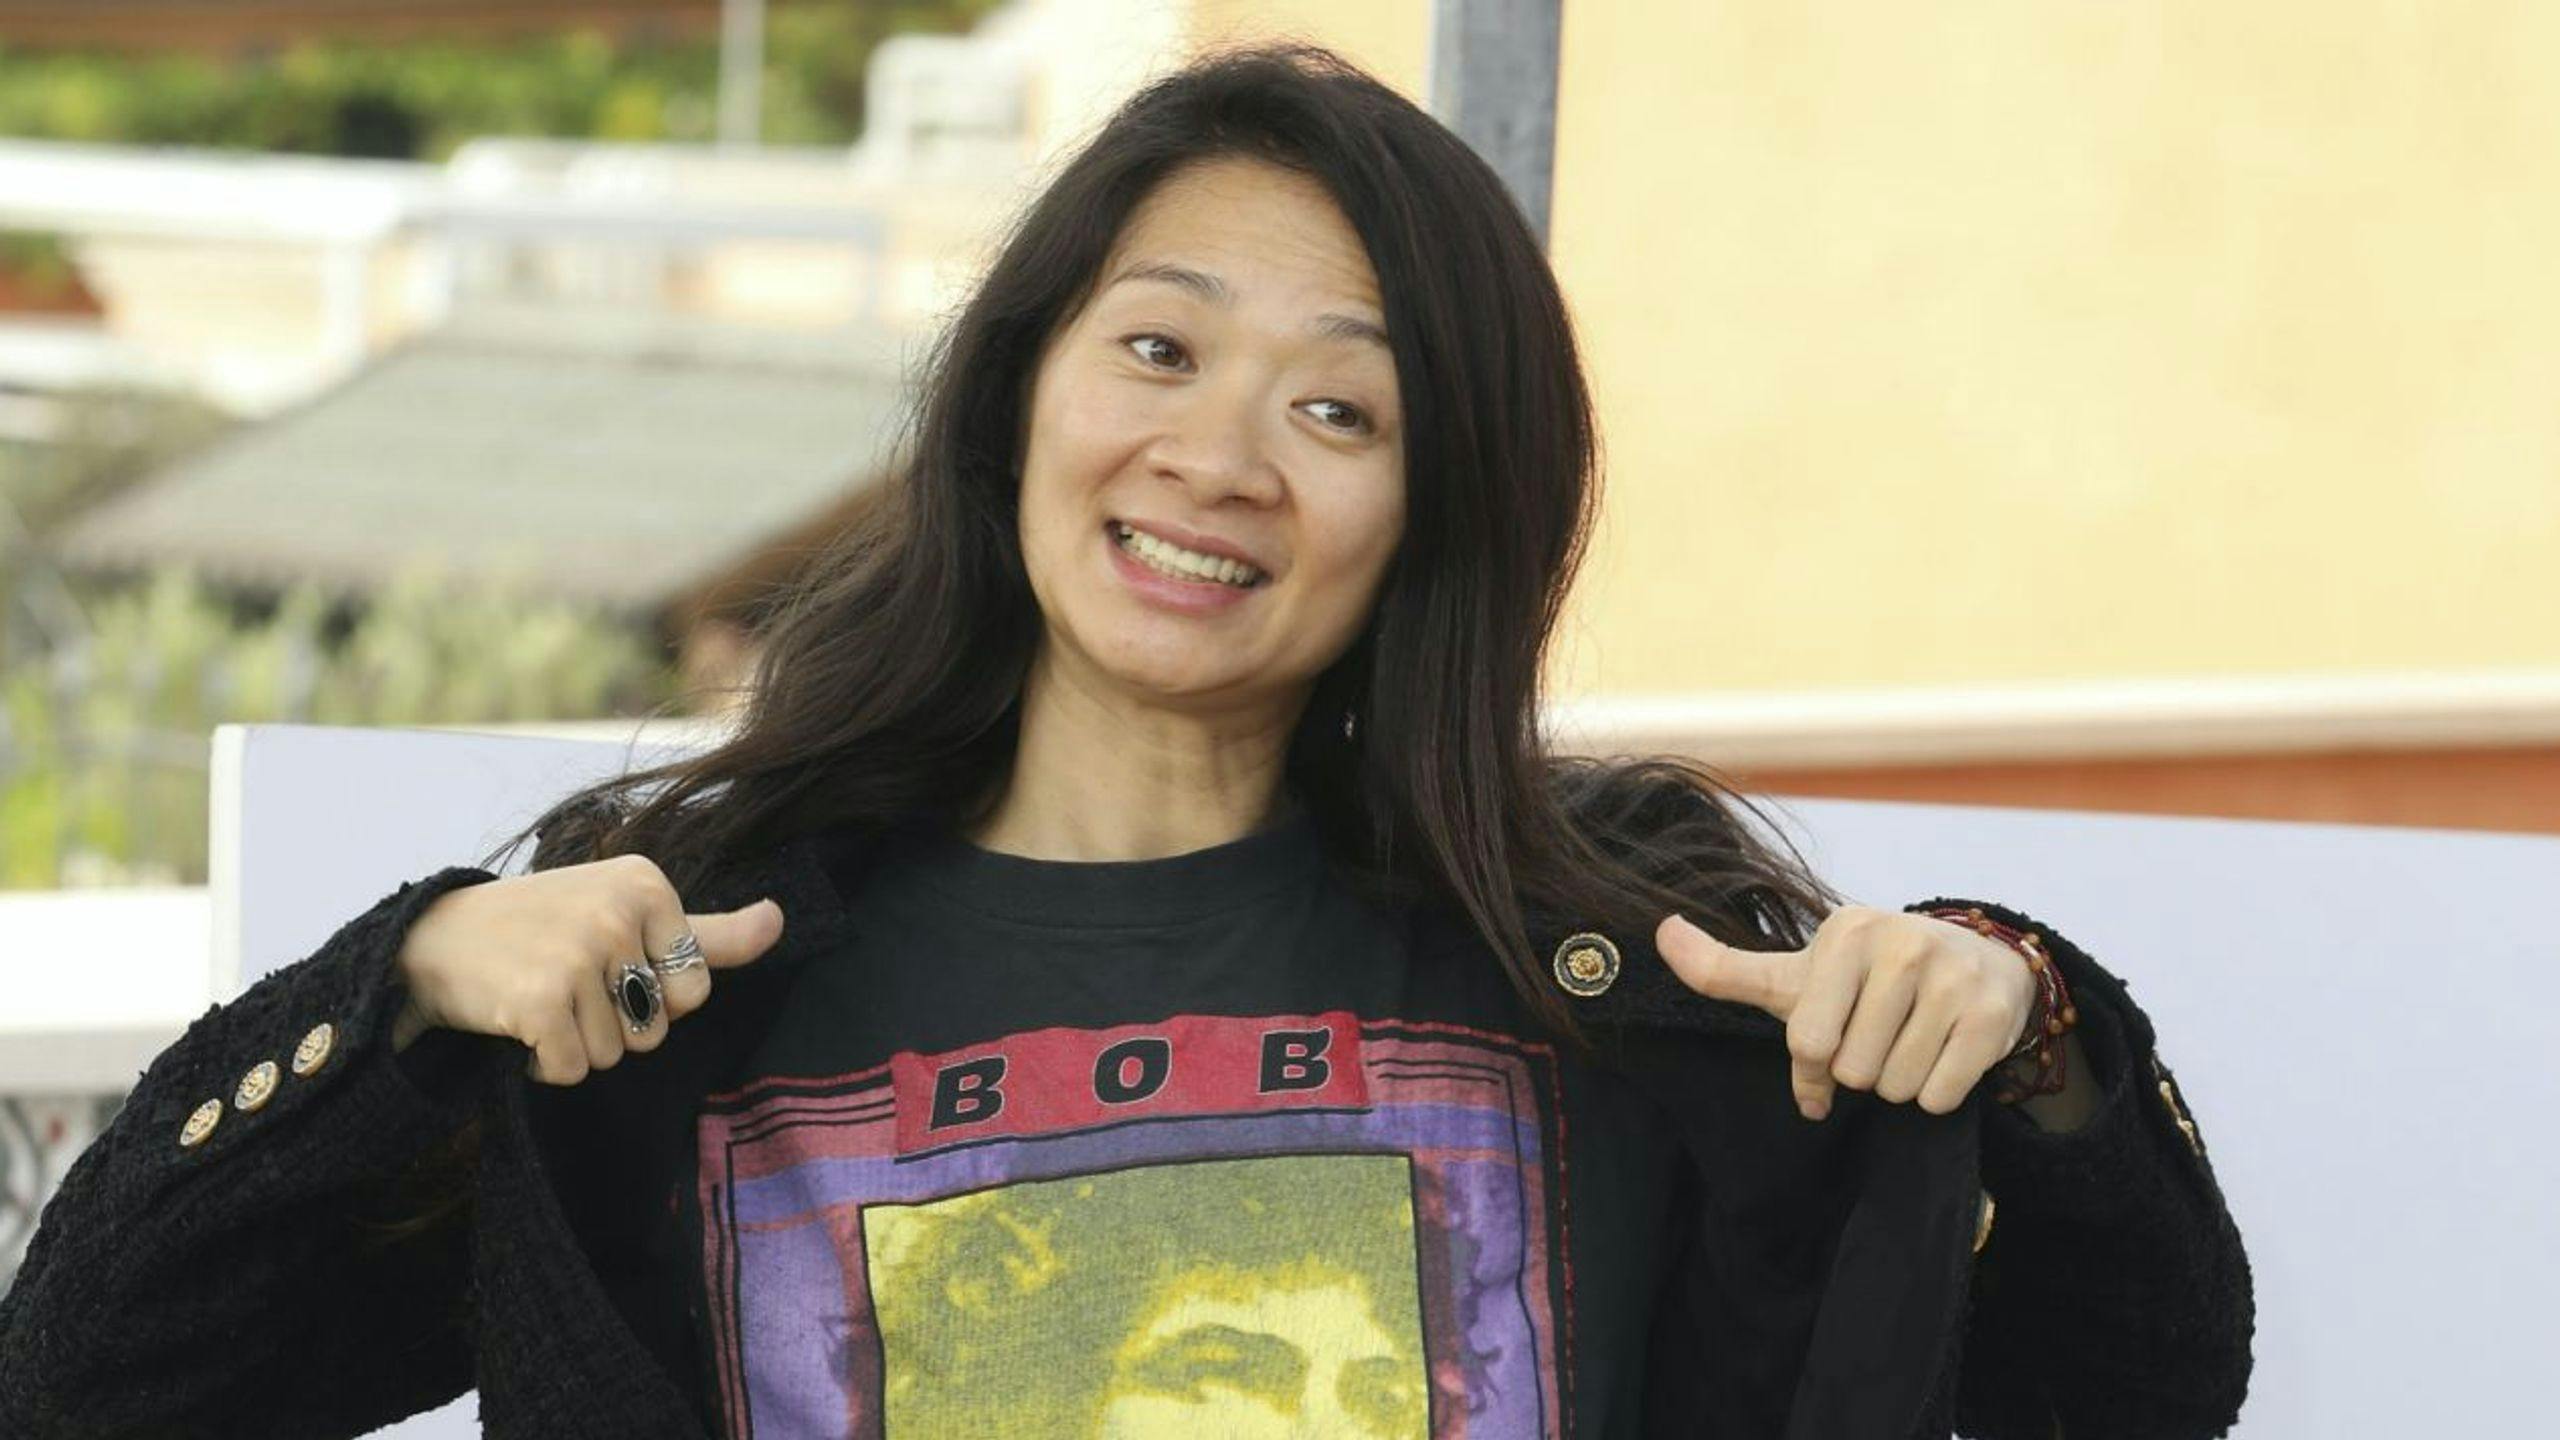 La directora Chloé Zhao, durante la promoción de 'Eternals'.